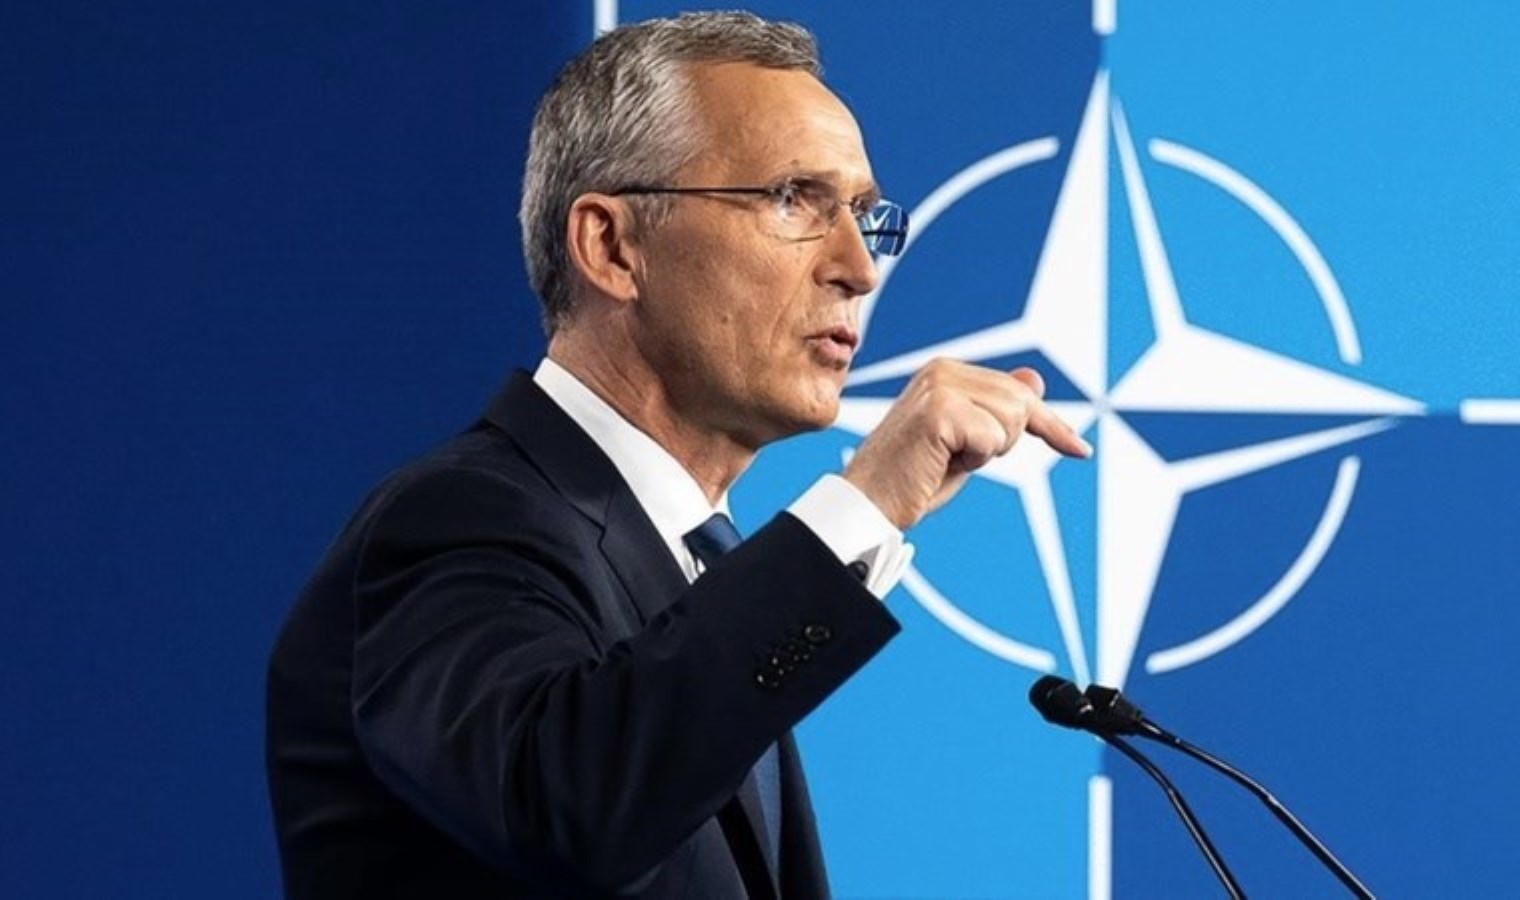 NATO’dan ‘nükleer doktrin’ kararı: Acil bir tehdit yok